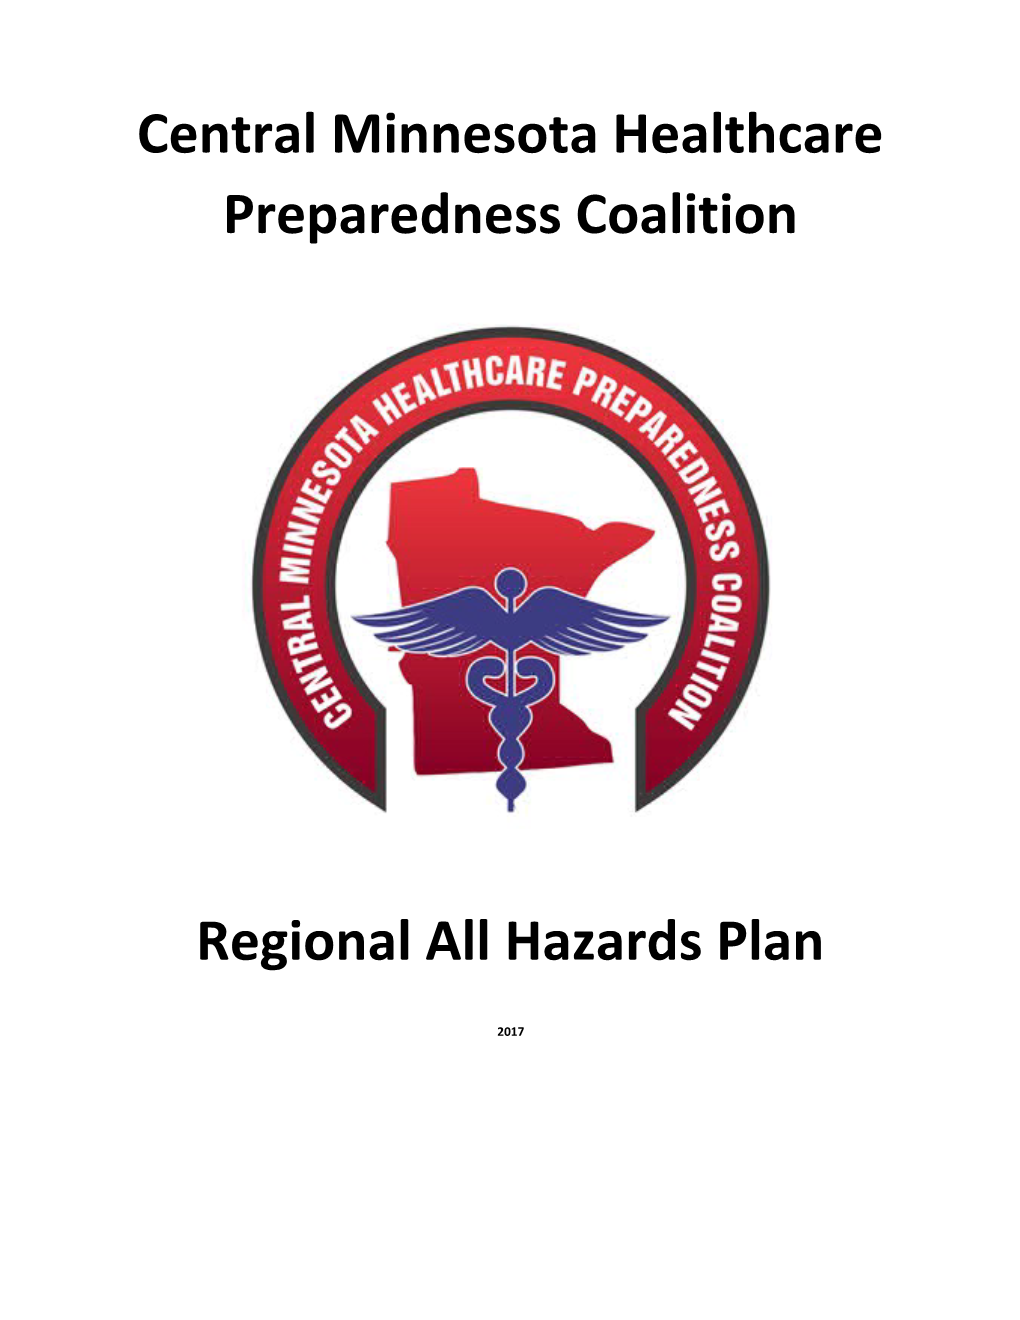 Central Minnesota Healthcare Preparedness Coalition